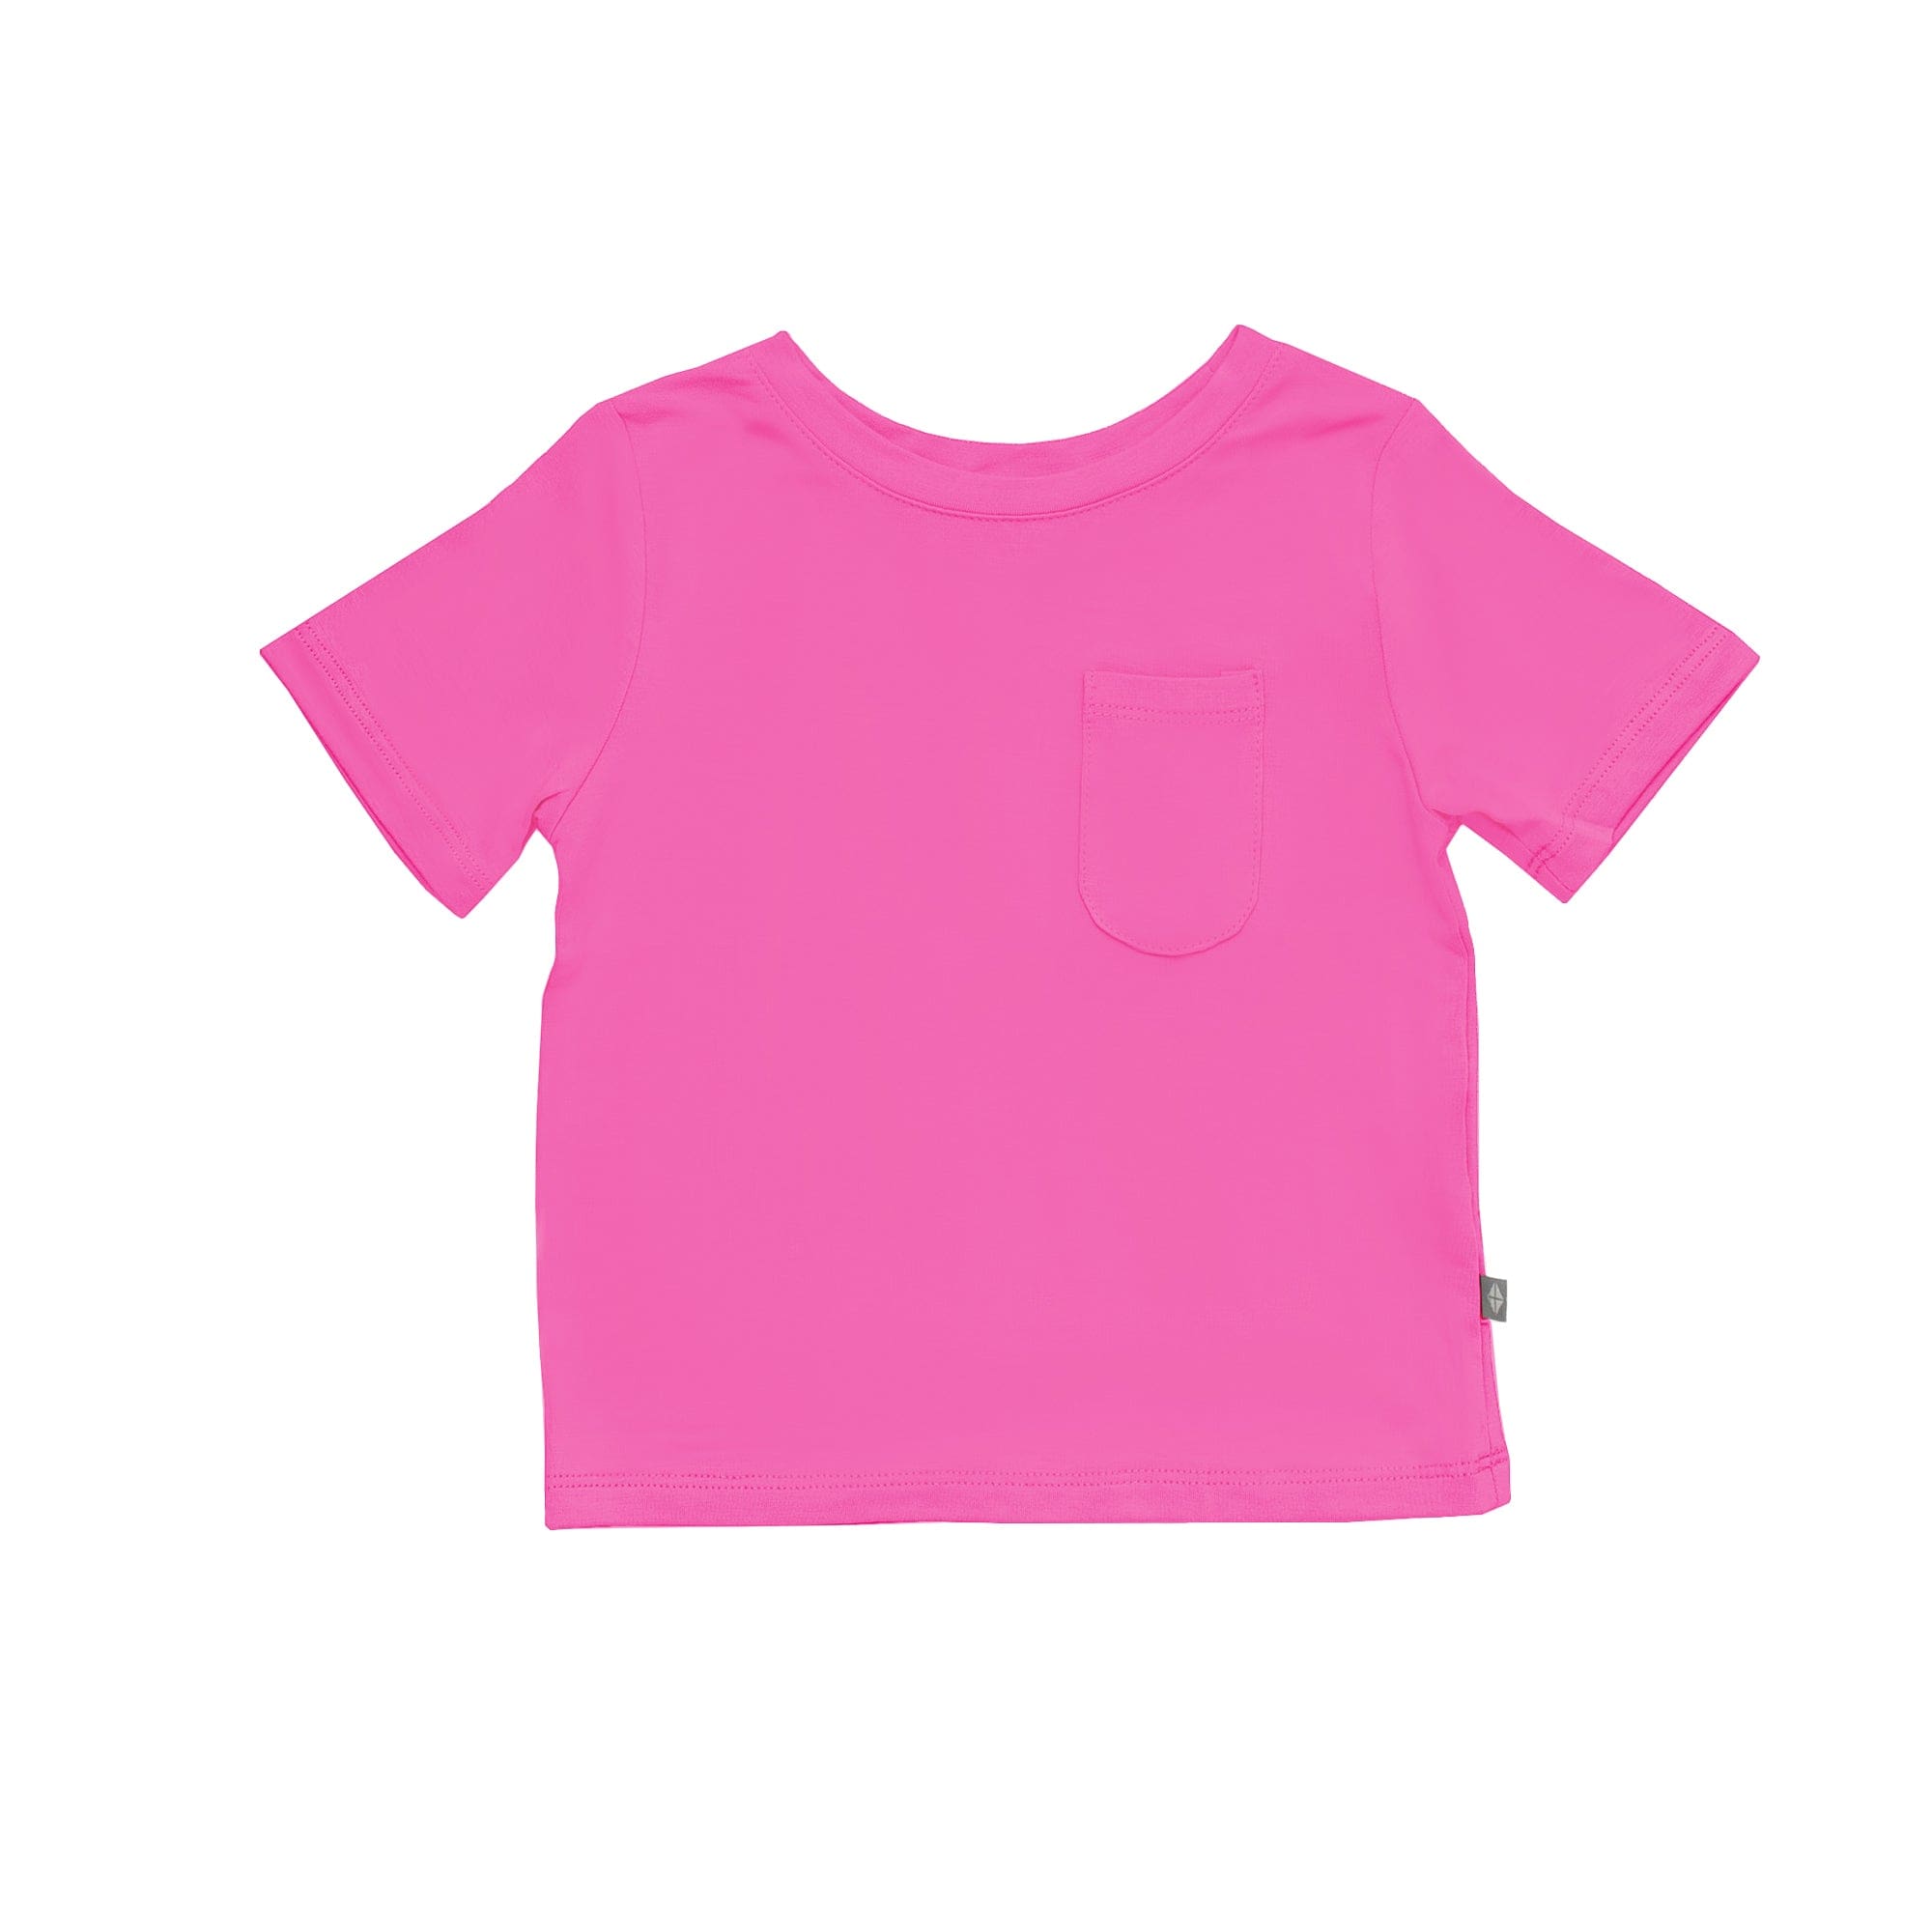 Pastel on Light Frabric Knitting AF Unisex Scoop Neck T-Shirt